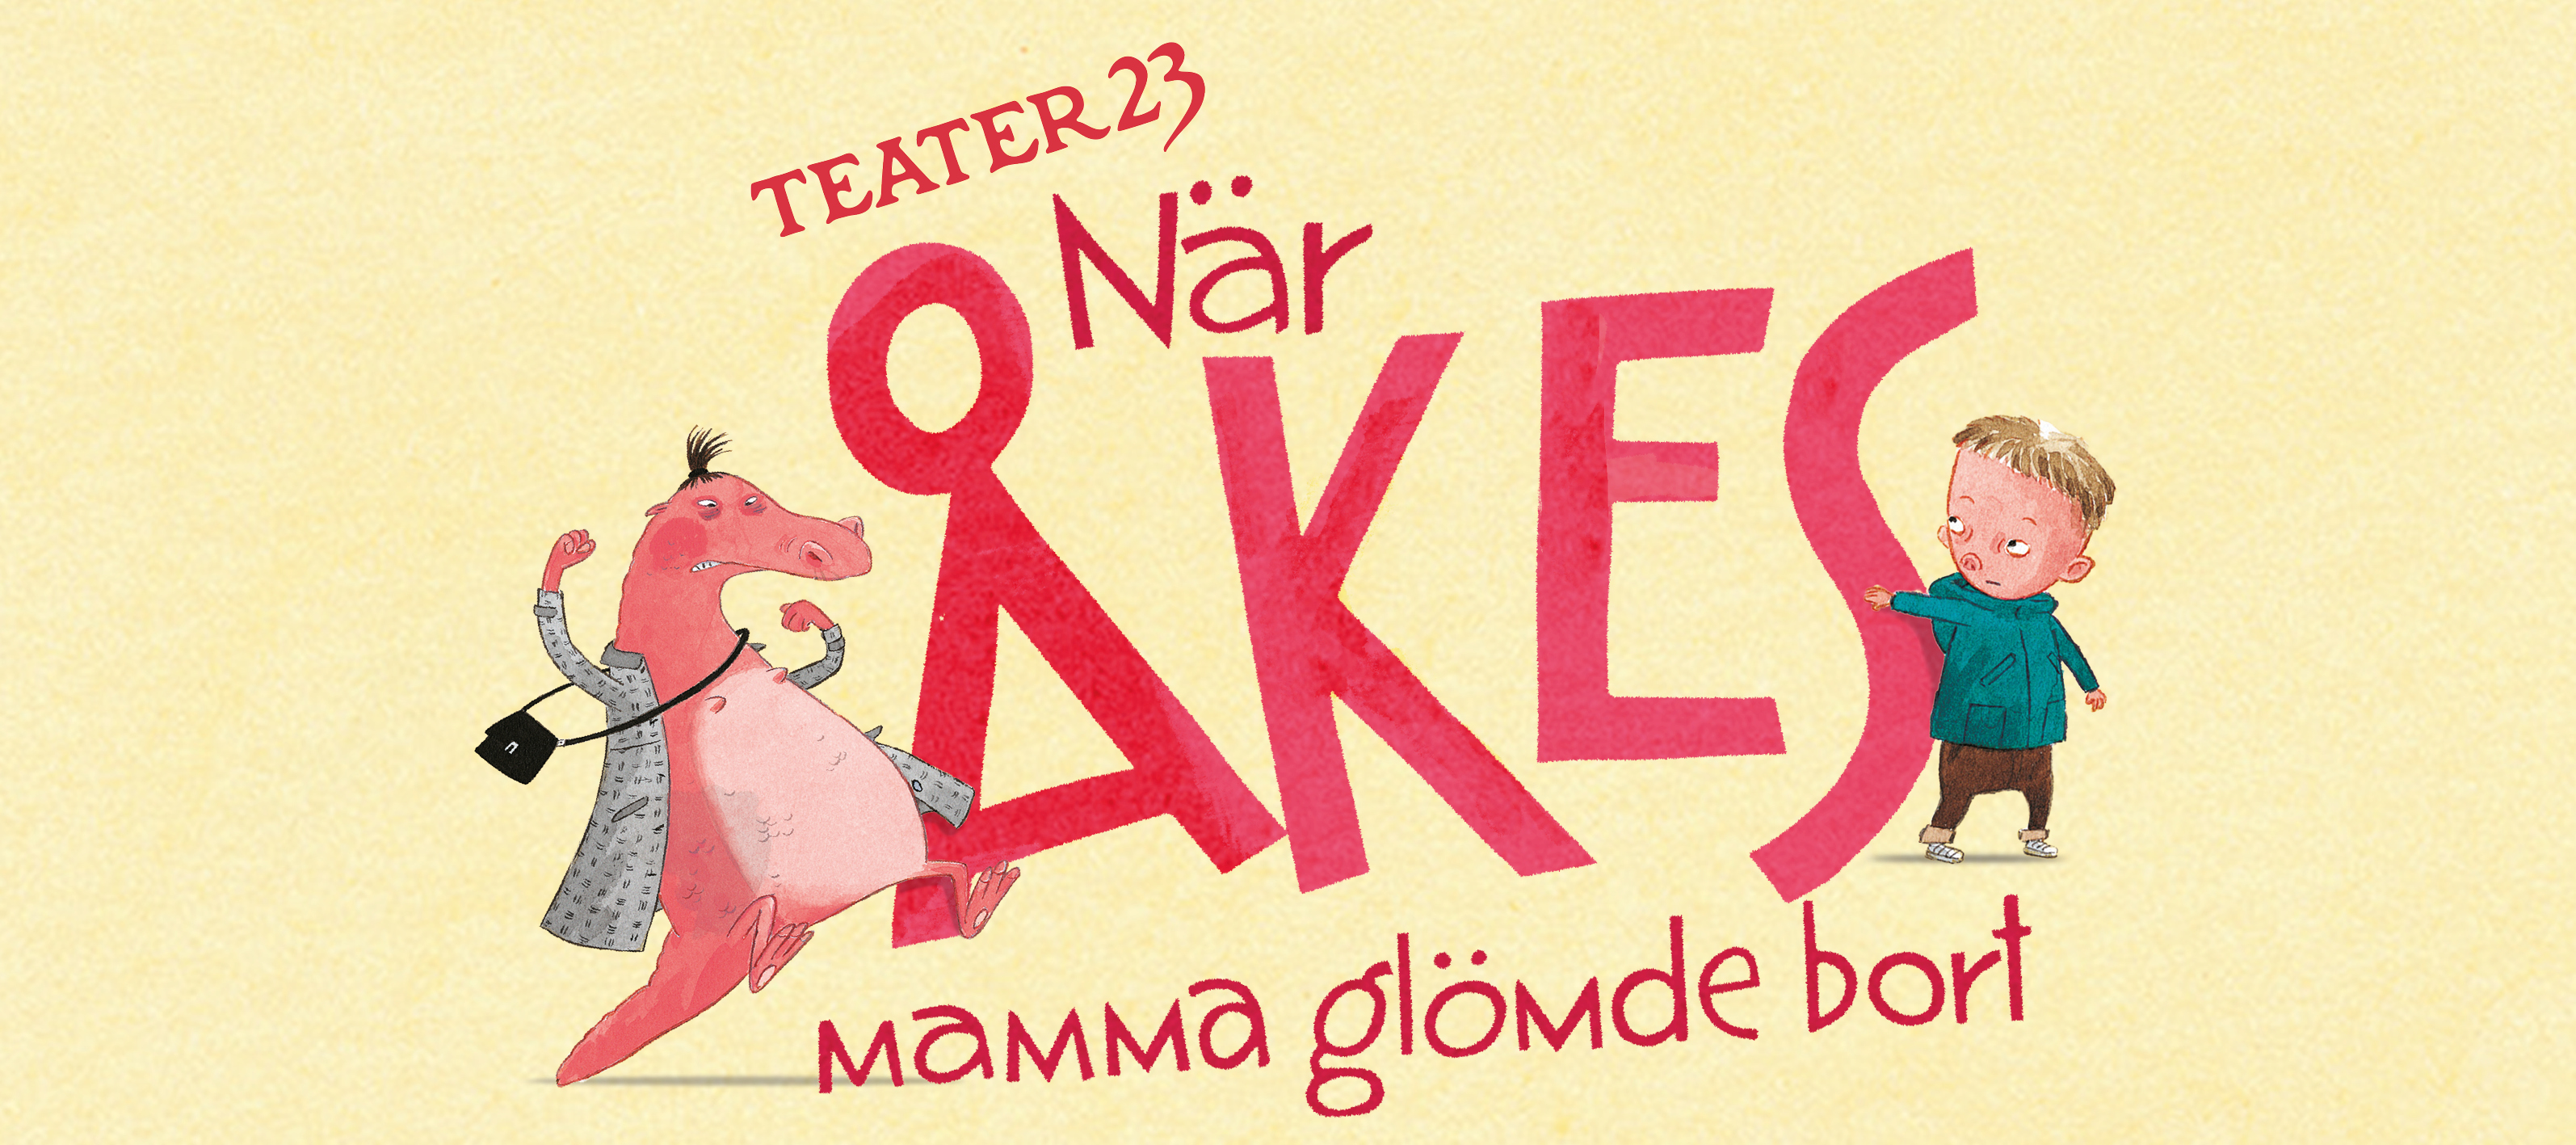 Texten När Åkes mamma glömde bort i stark rosa mot en ljusgul bakgrund